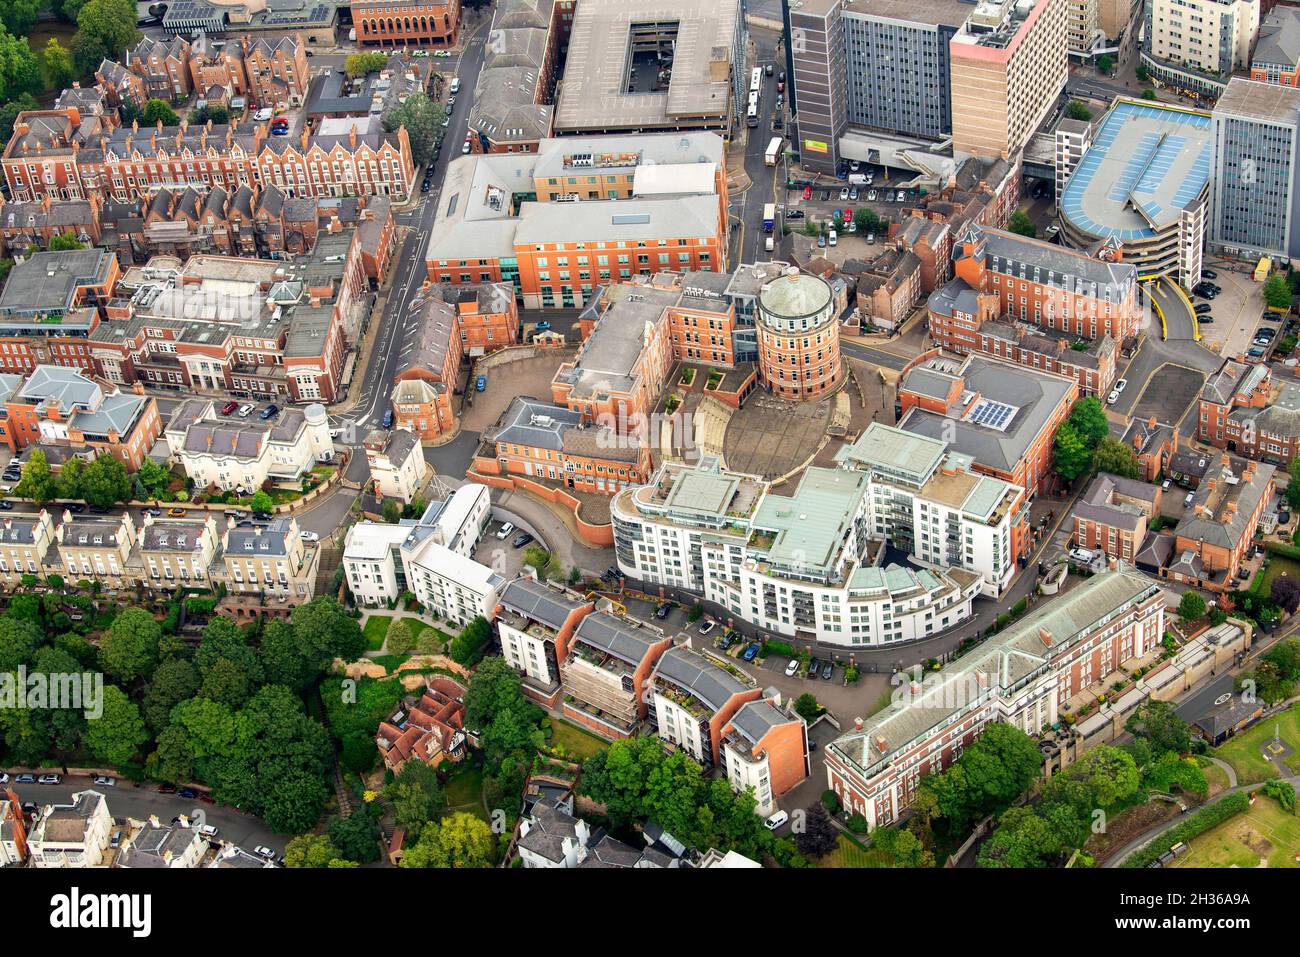 Aerial image of the Ropewalk area in Nottingham City, Nottinghamshire England UK Stock Photo